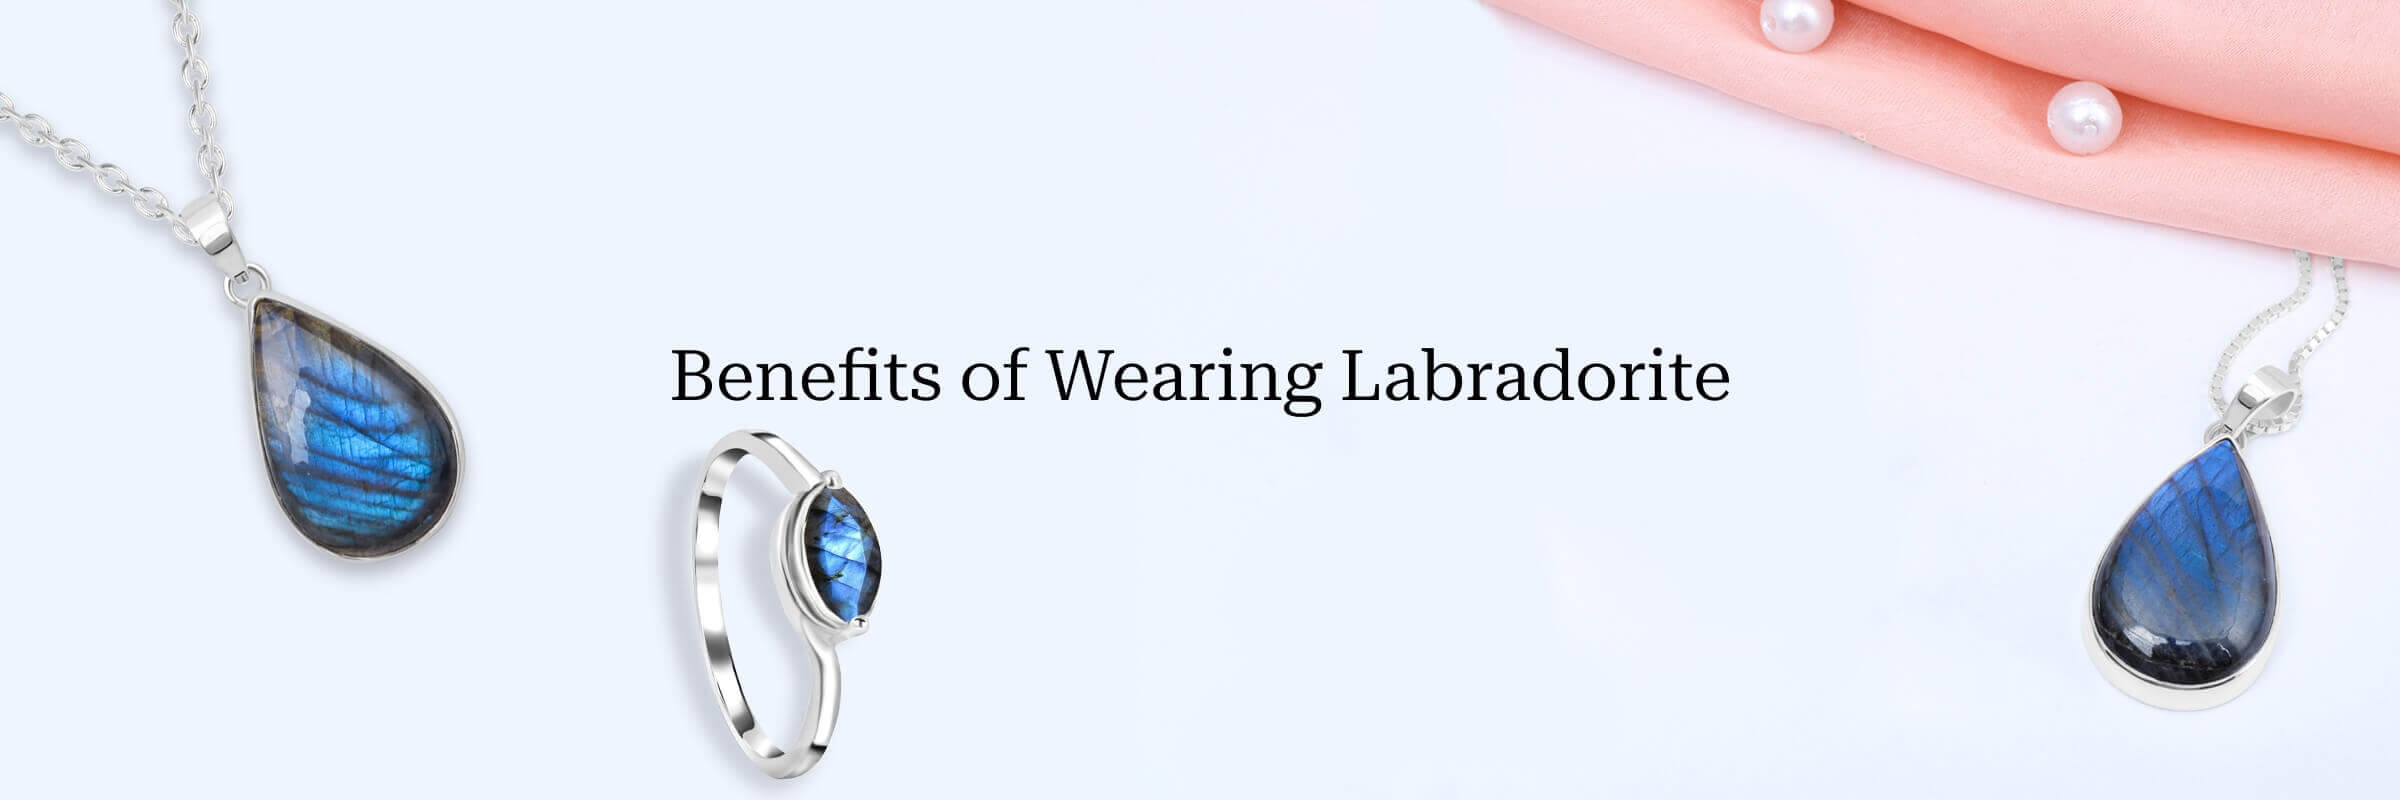 Benefits of wearing Labradorite